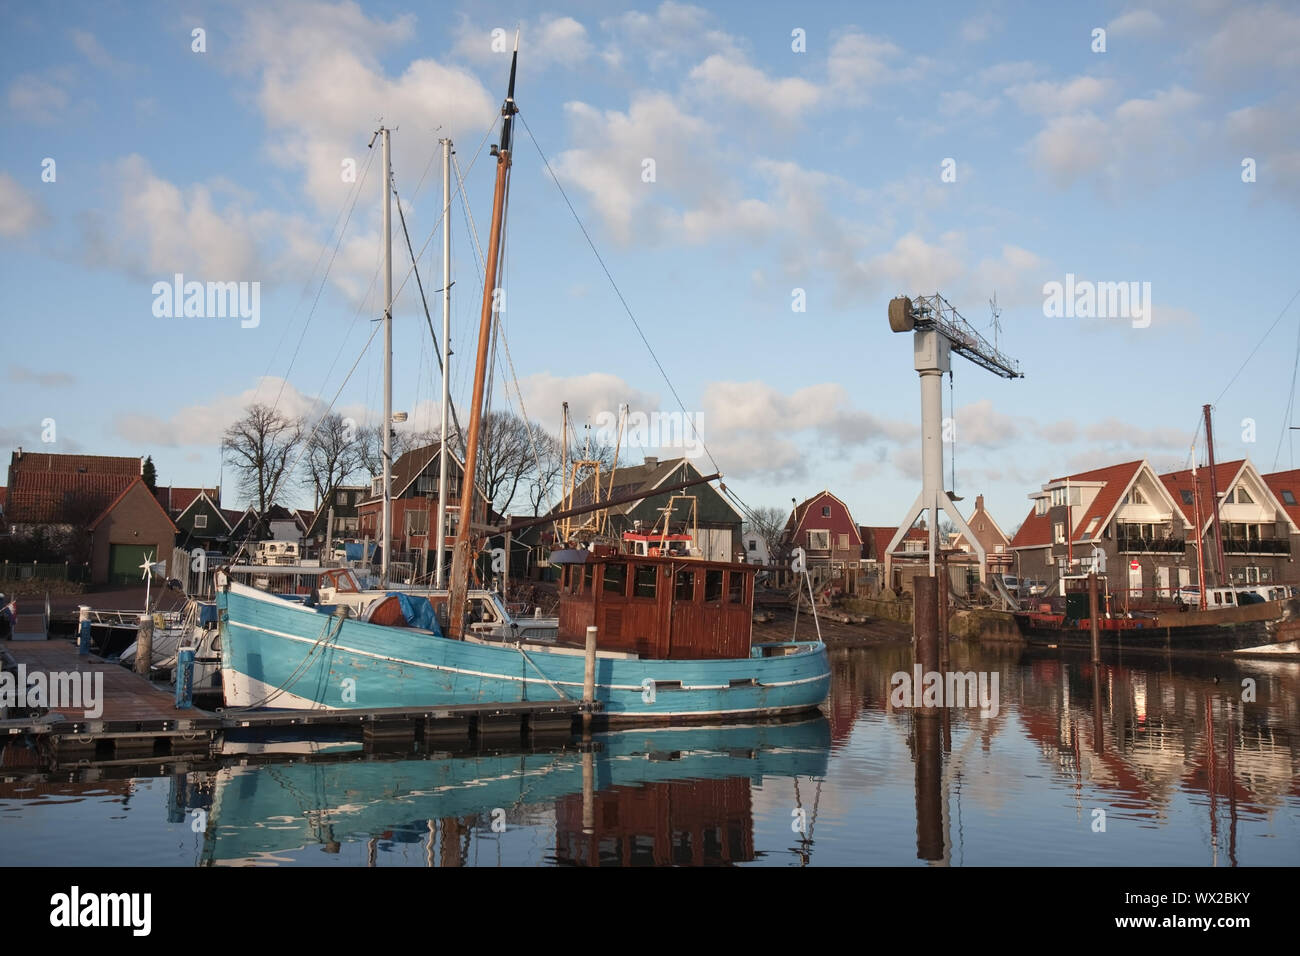 Le chantier naval près de la faucheuse de pêche dans le port d'Amsterdam, Pays-Bas Banque D'Images